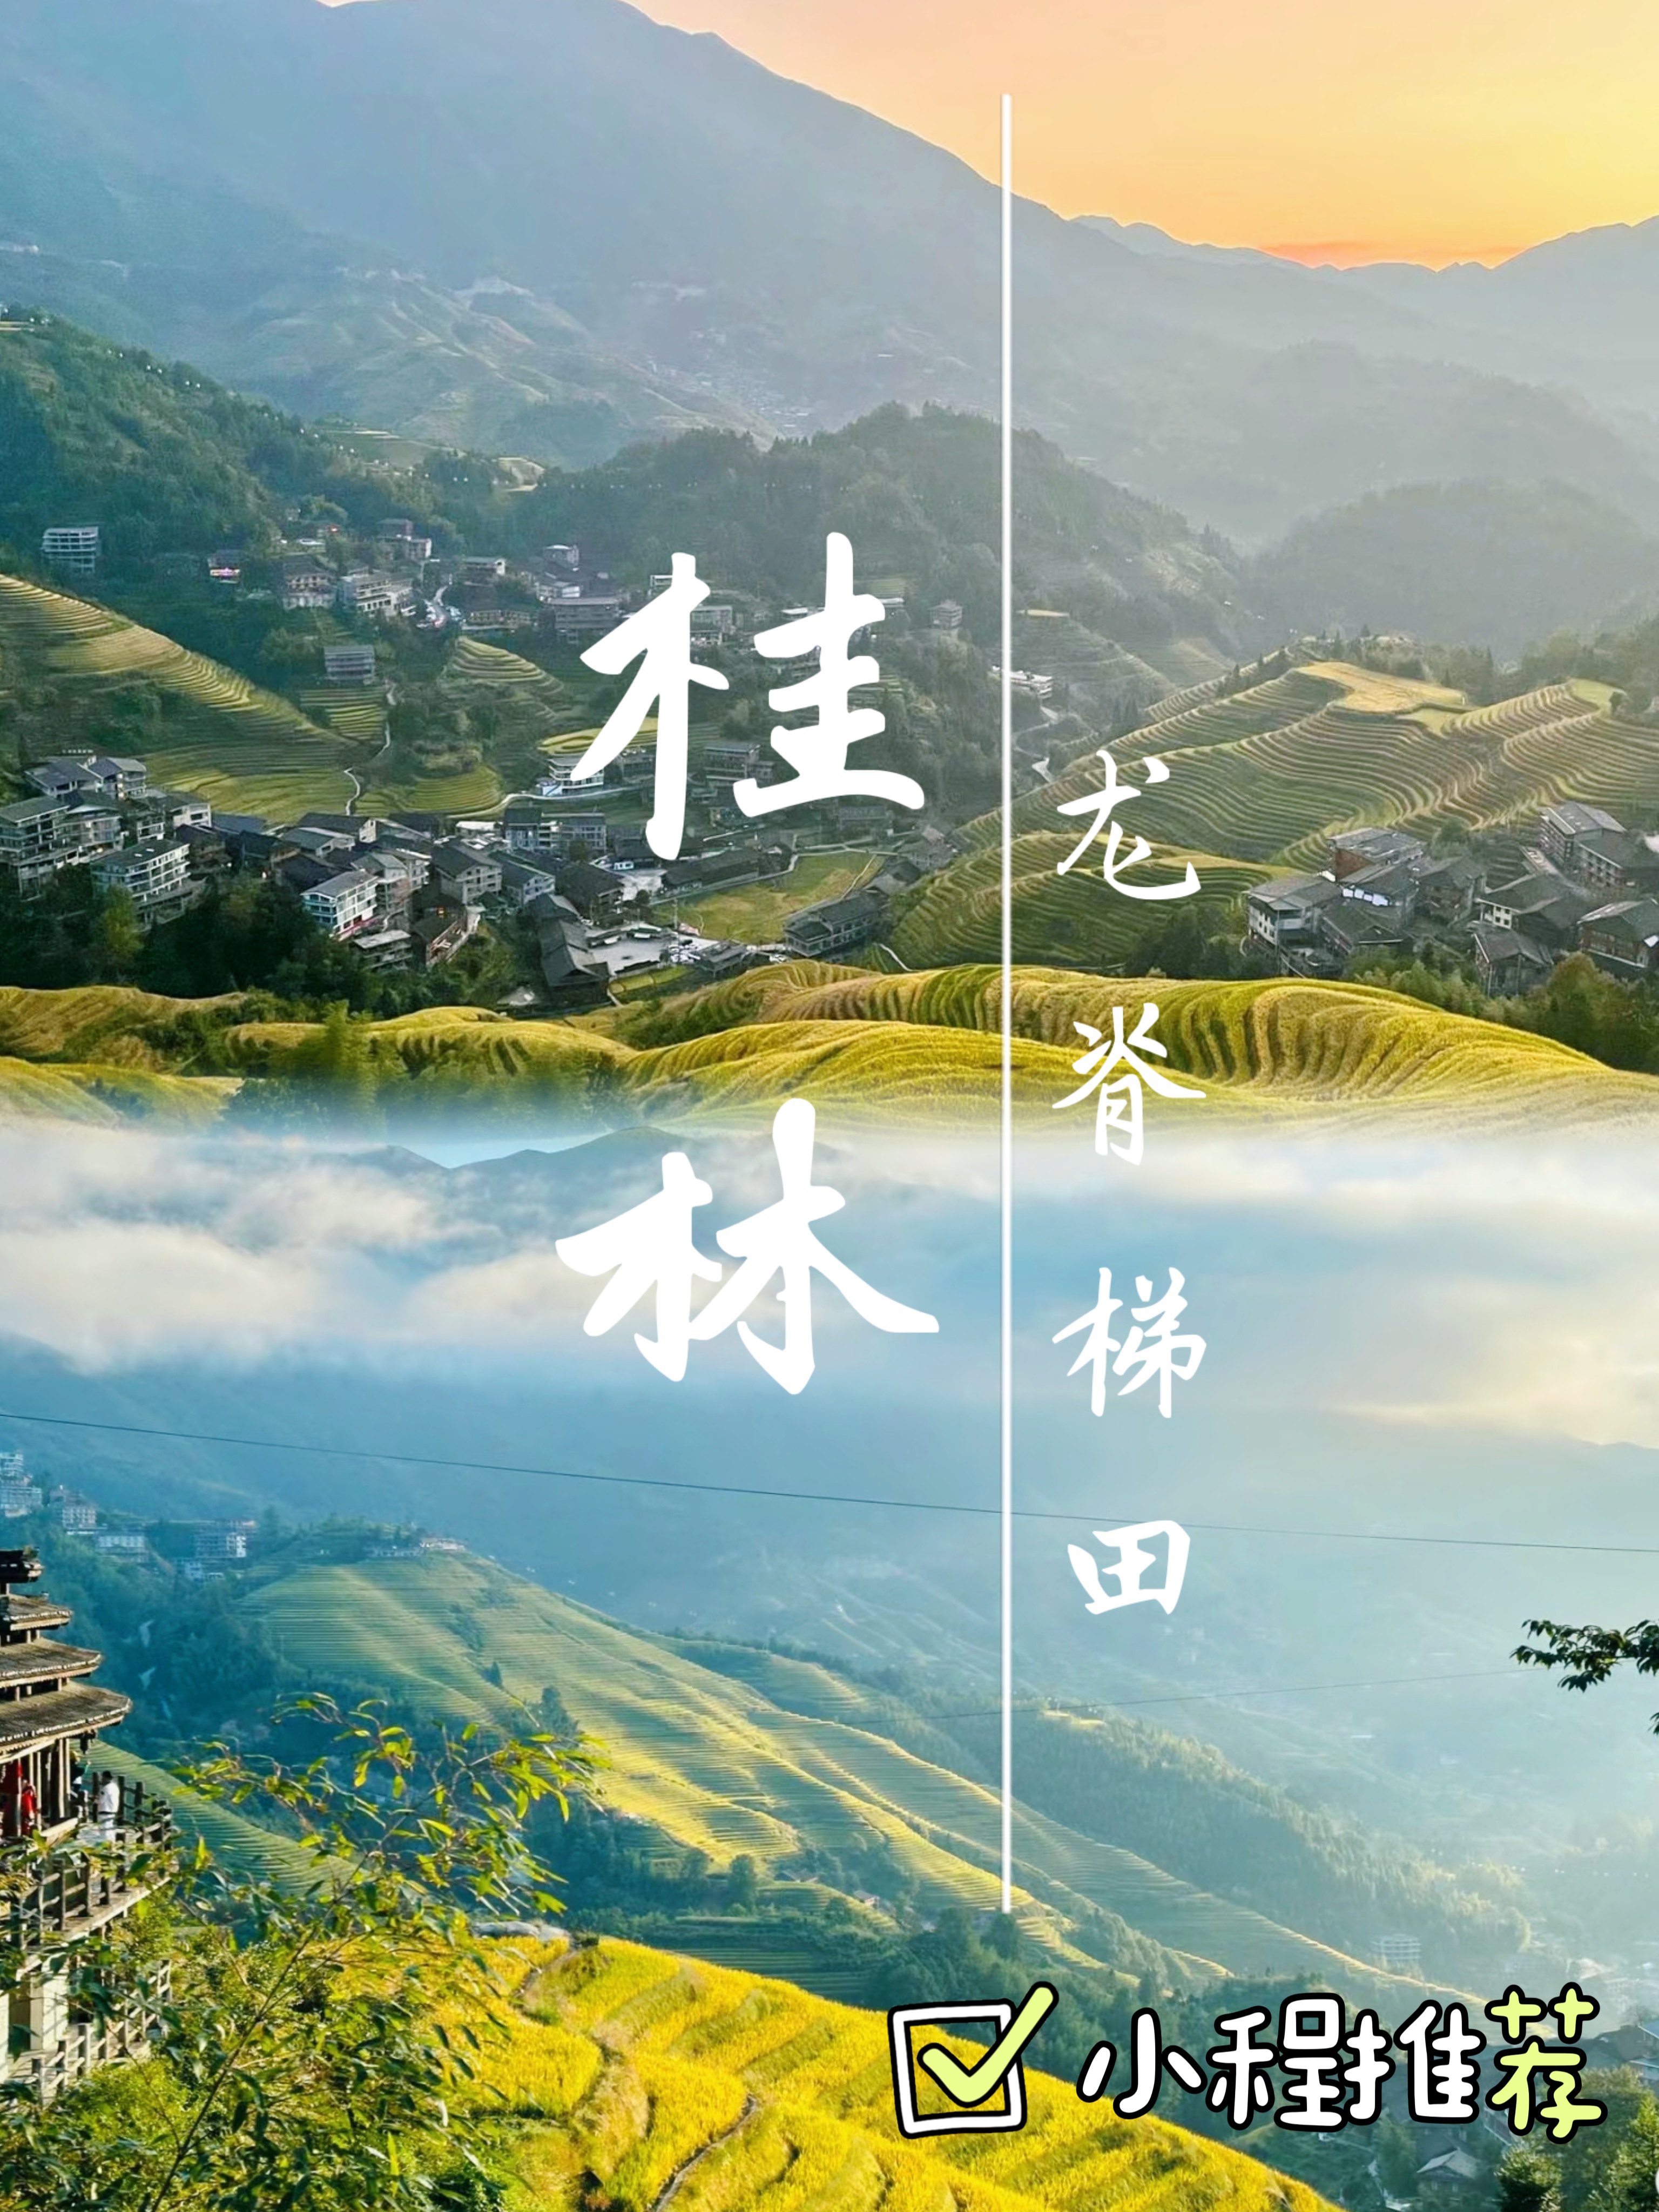 桂林|龙脊梯田 一起享受大自然的美